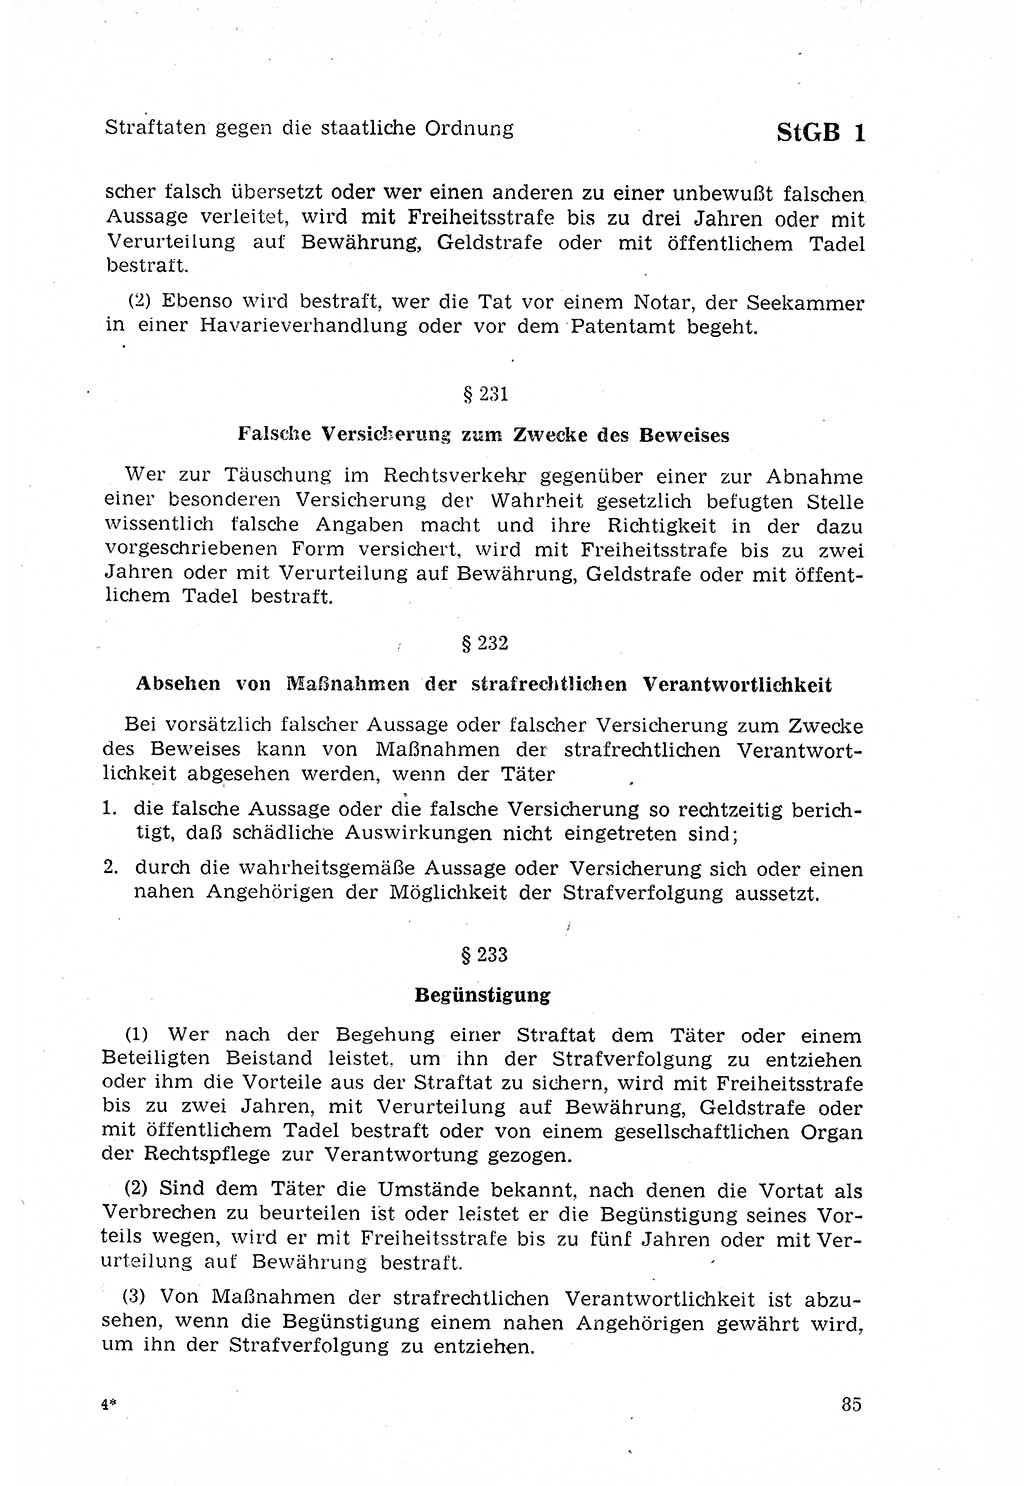 Strafgesetzbuch (StGB) der Deutschen Demokratischen Republik (DDR) 1968, Seite 85 (StGB DDR 1968, S. 85)